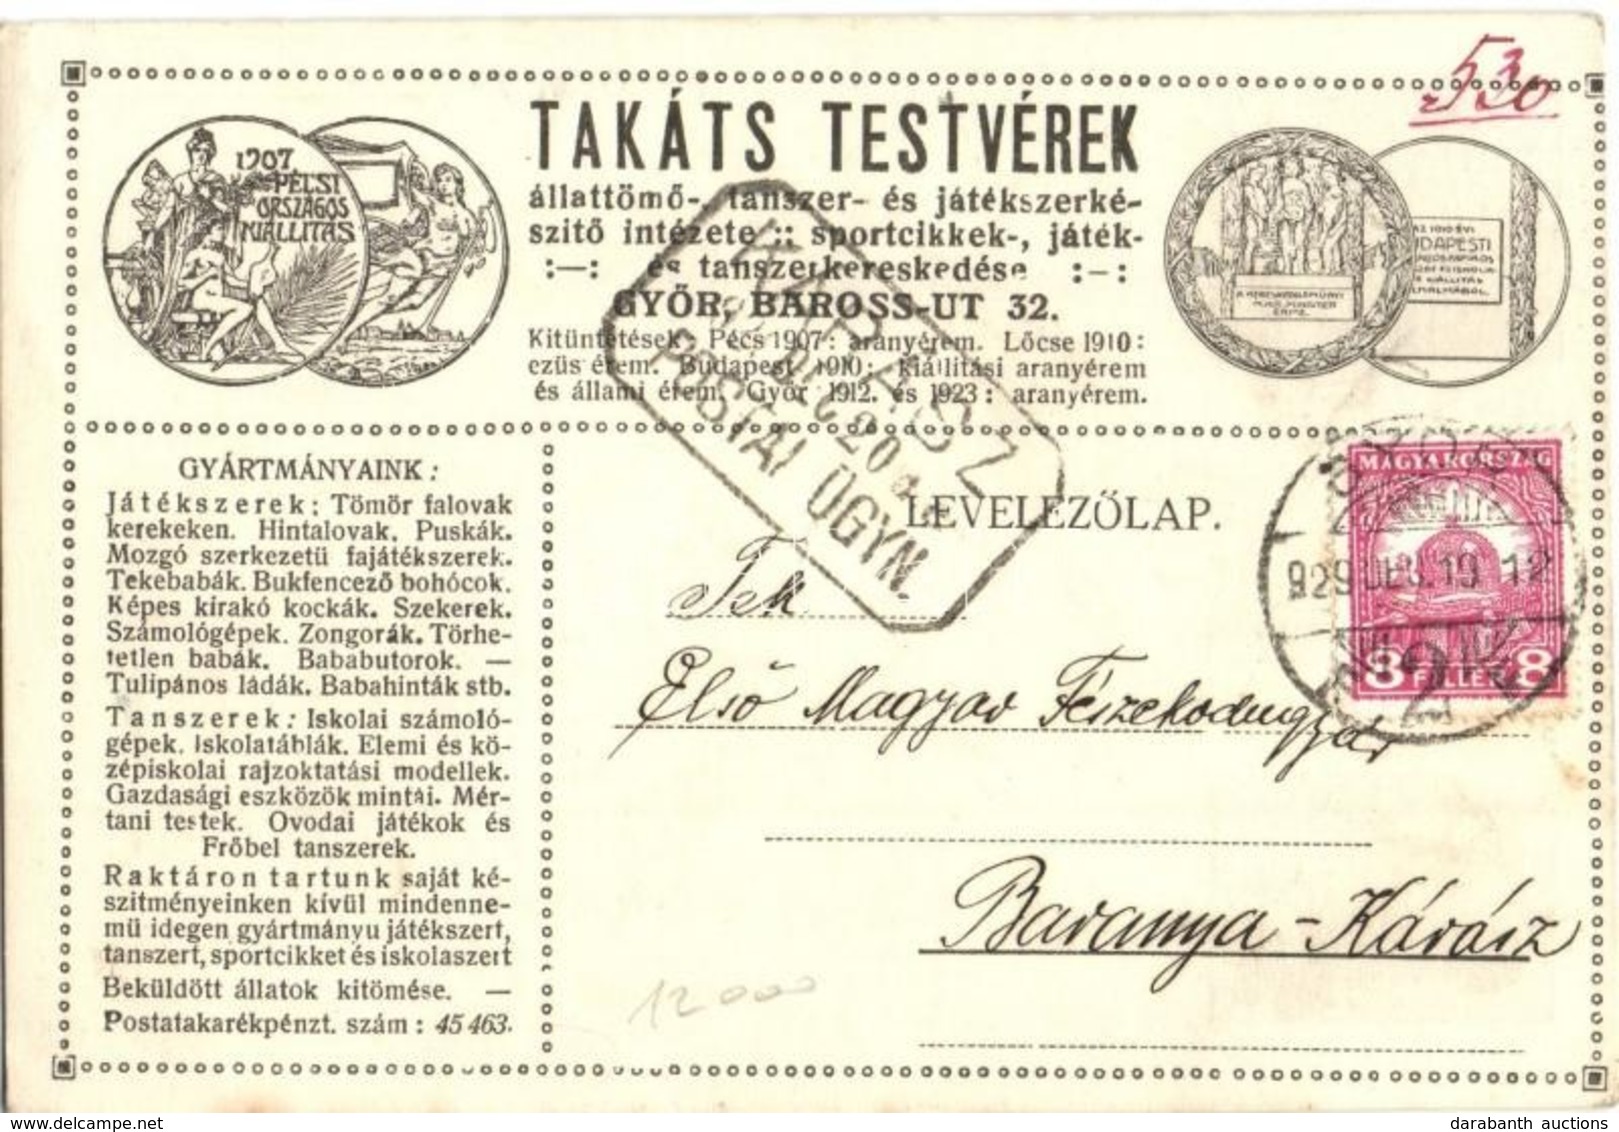 T2/T3 1929 Takáts Testvérek állattömő-, Tanszer- és Játékszerkészítő Intézete. Győr, Baross út 32. Saját Reklámlapjuk és - Sin Clasificación